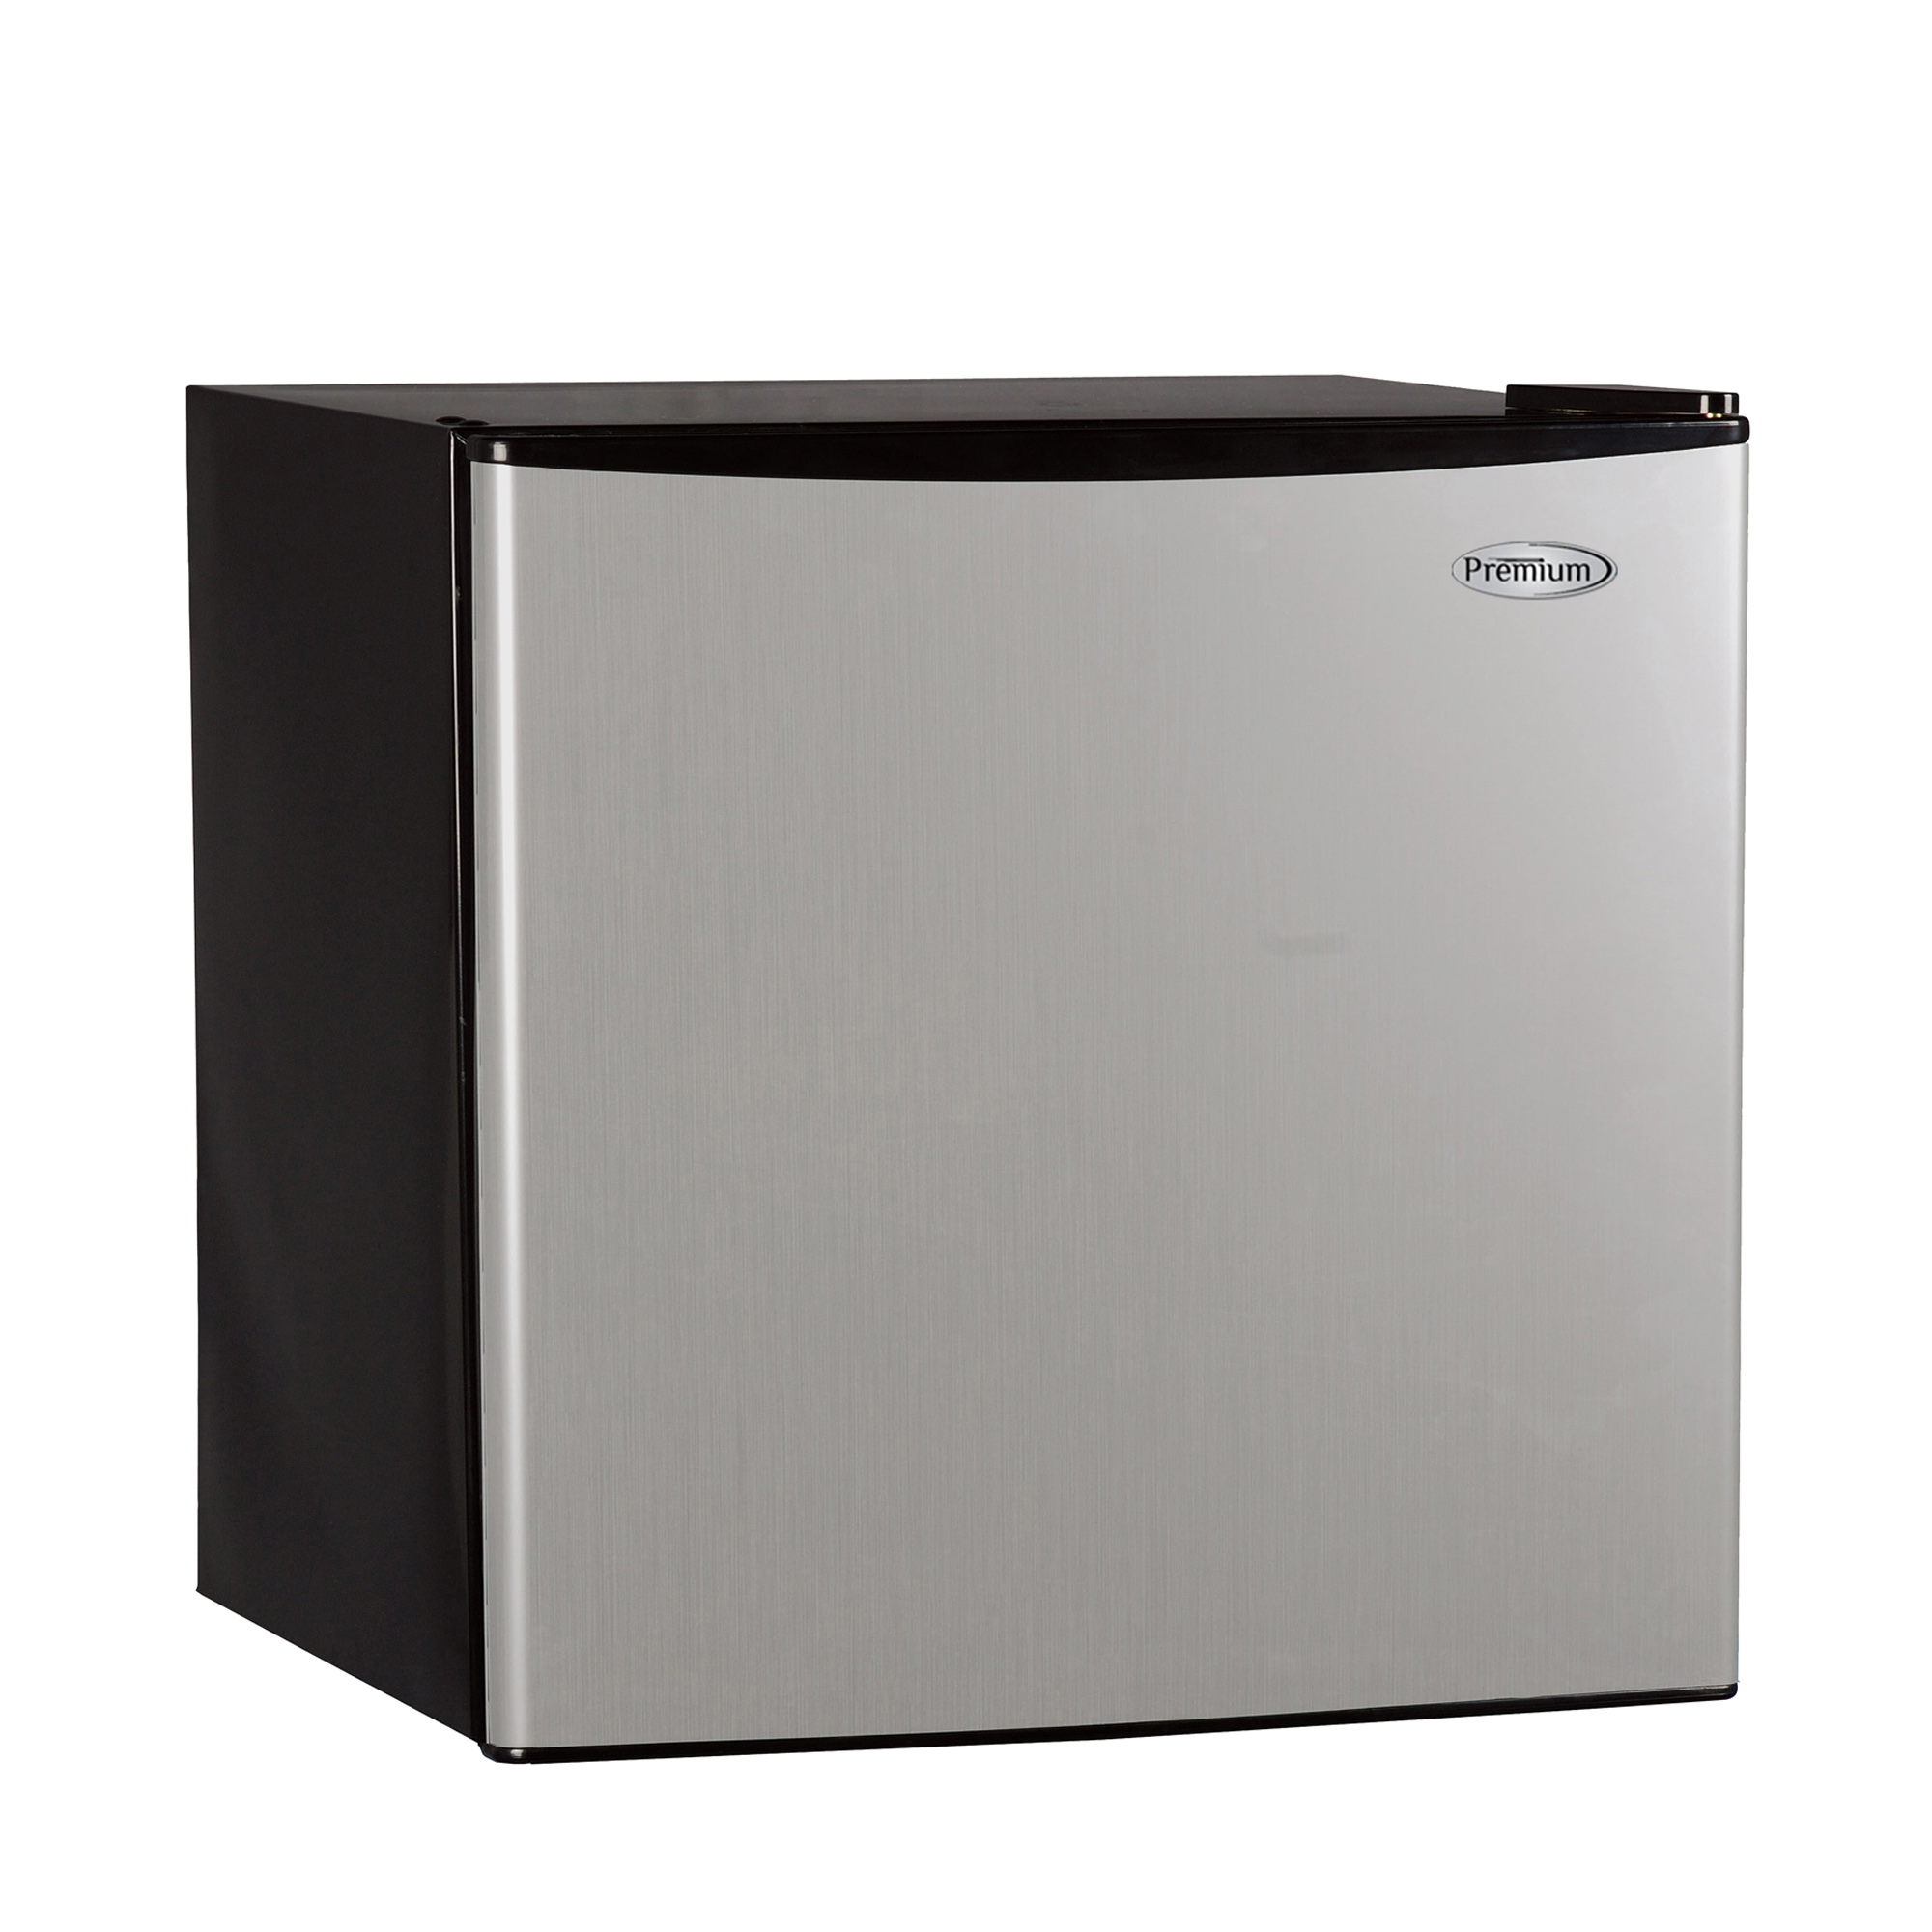 Premium Appliances - 1.6 ft³ Refrigerator